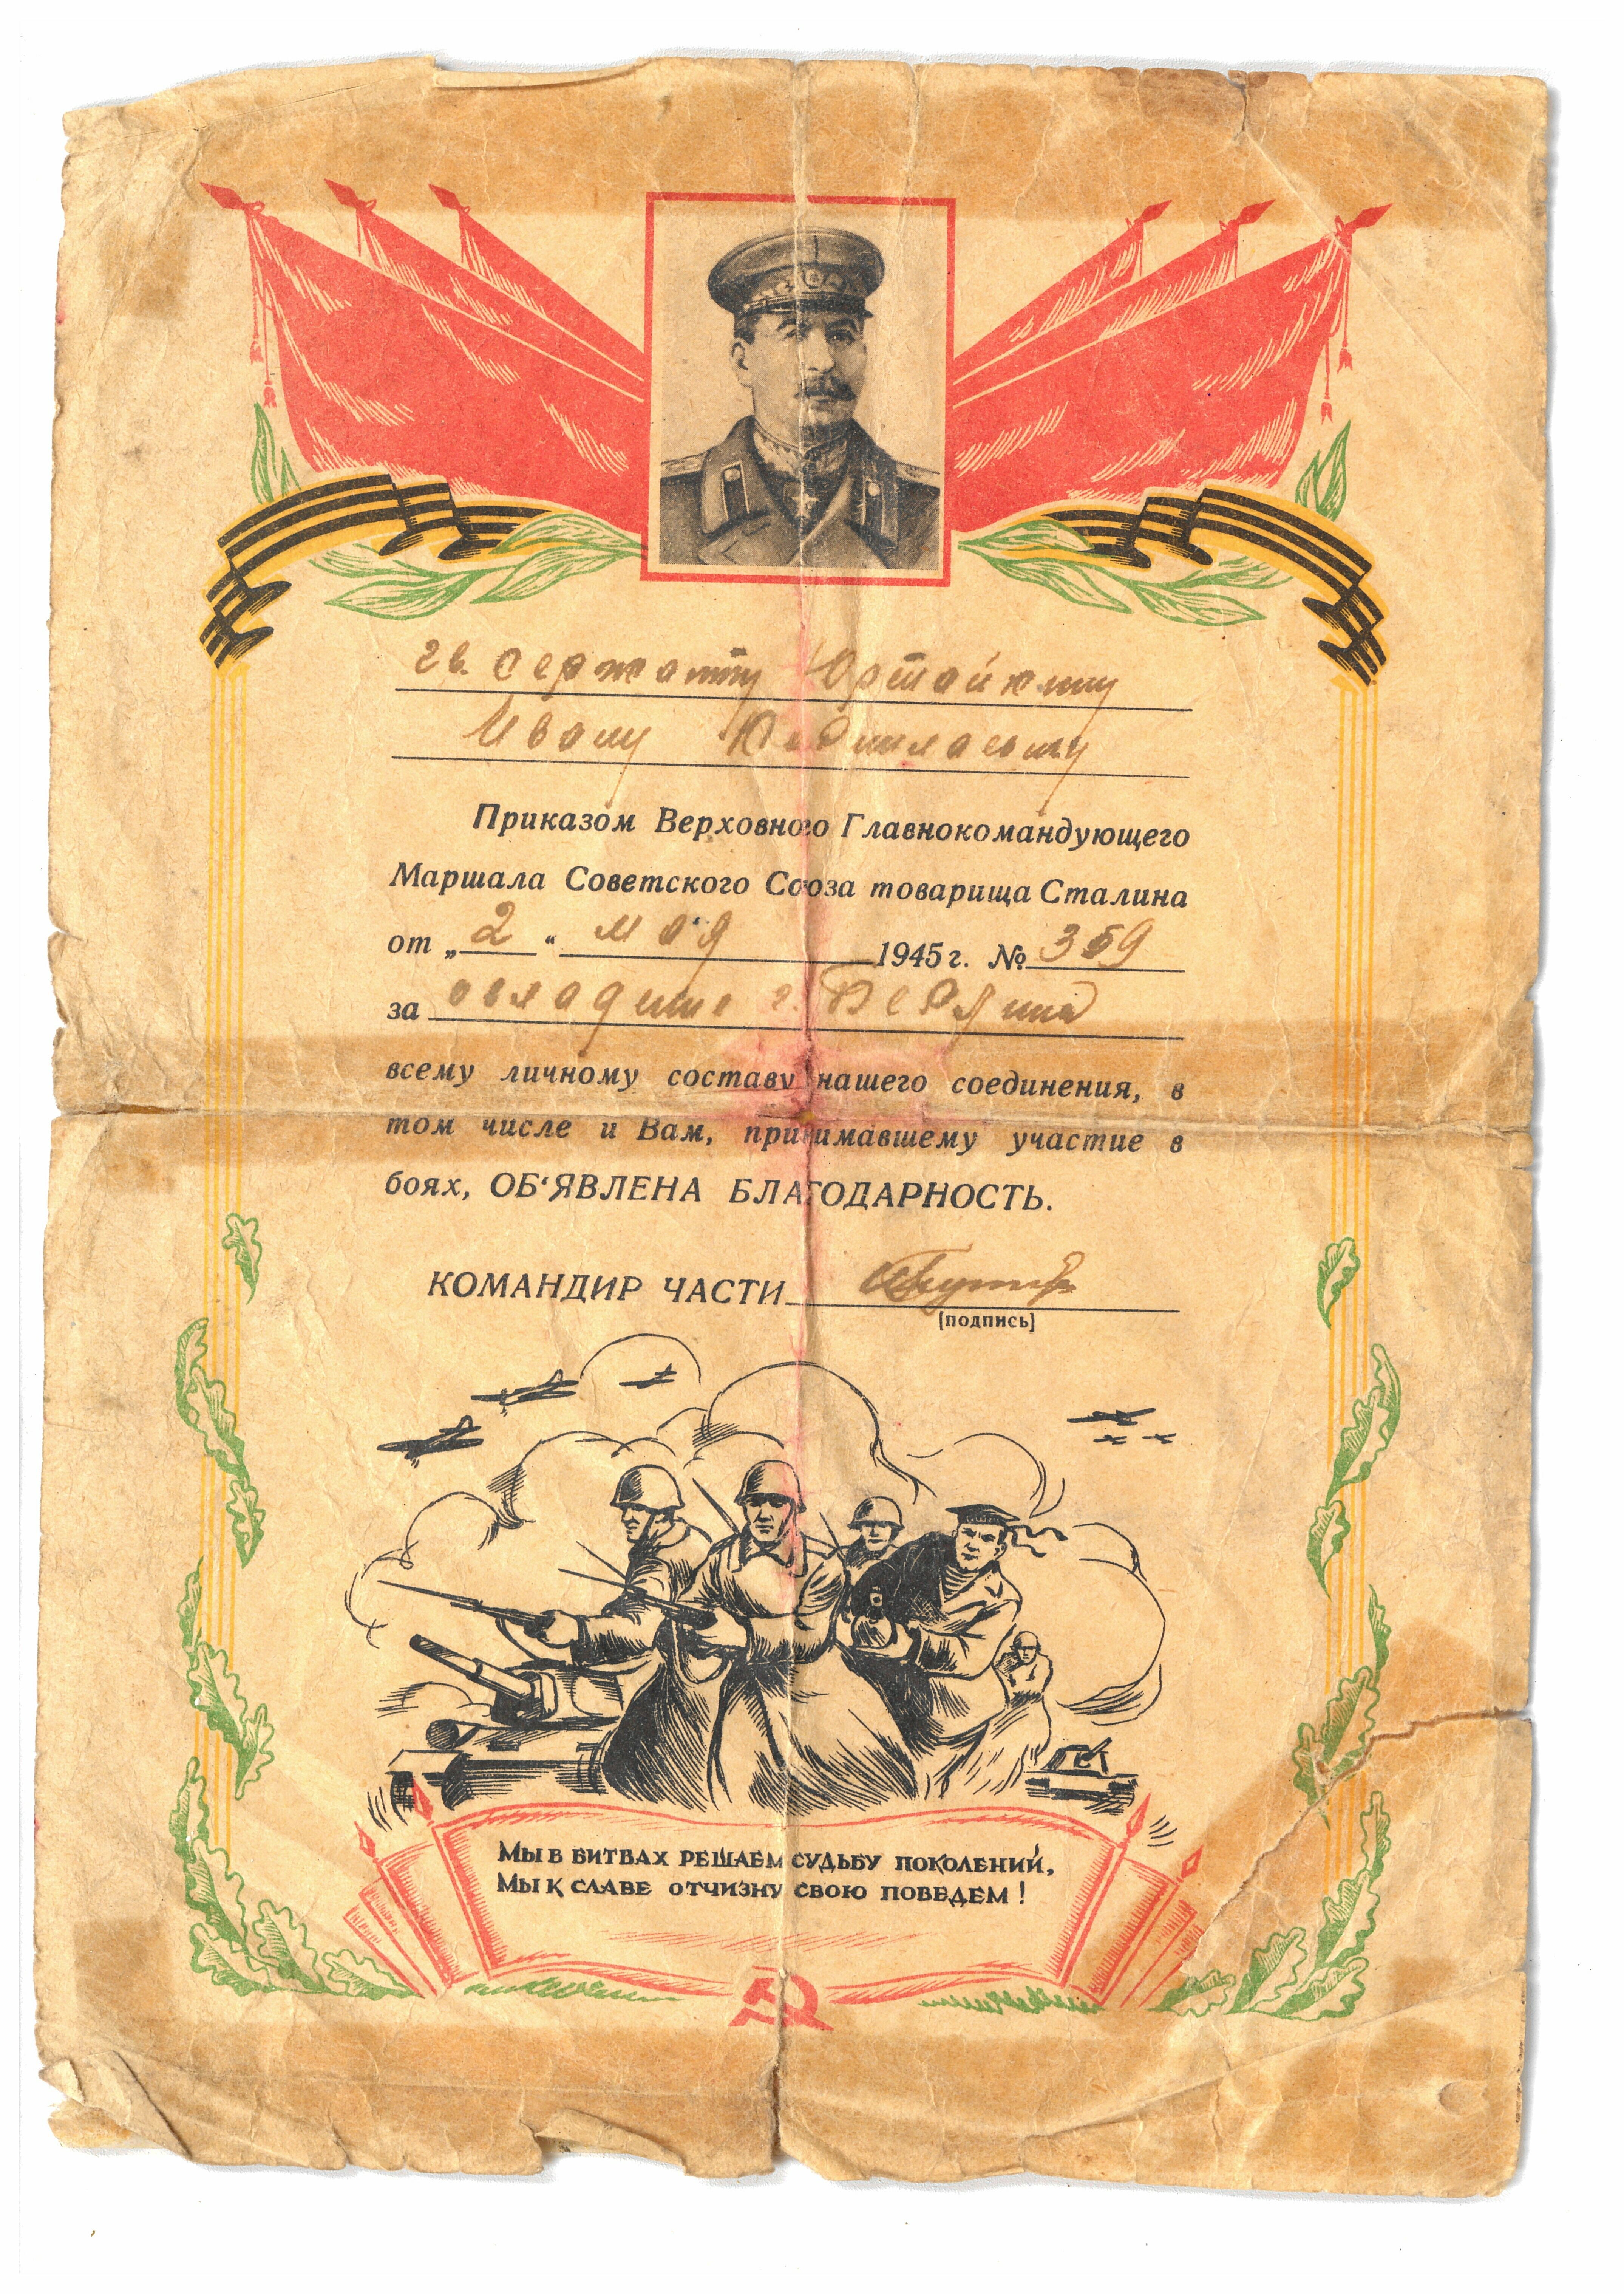 Urkunde des Gardesoldaten Jurtajkin, I.J. über die Teilnahme an der Eroberung Berlins (Deutsch-Russisches Museum Berlin-Karlshorst CC BY-NC-SA)